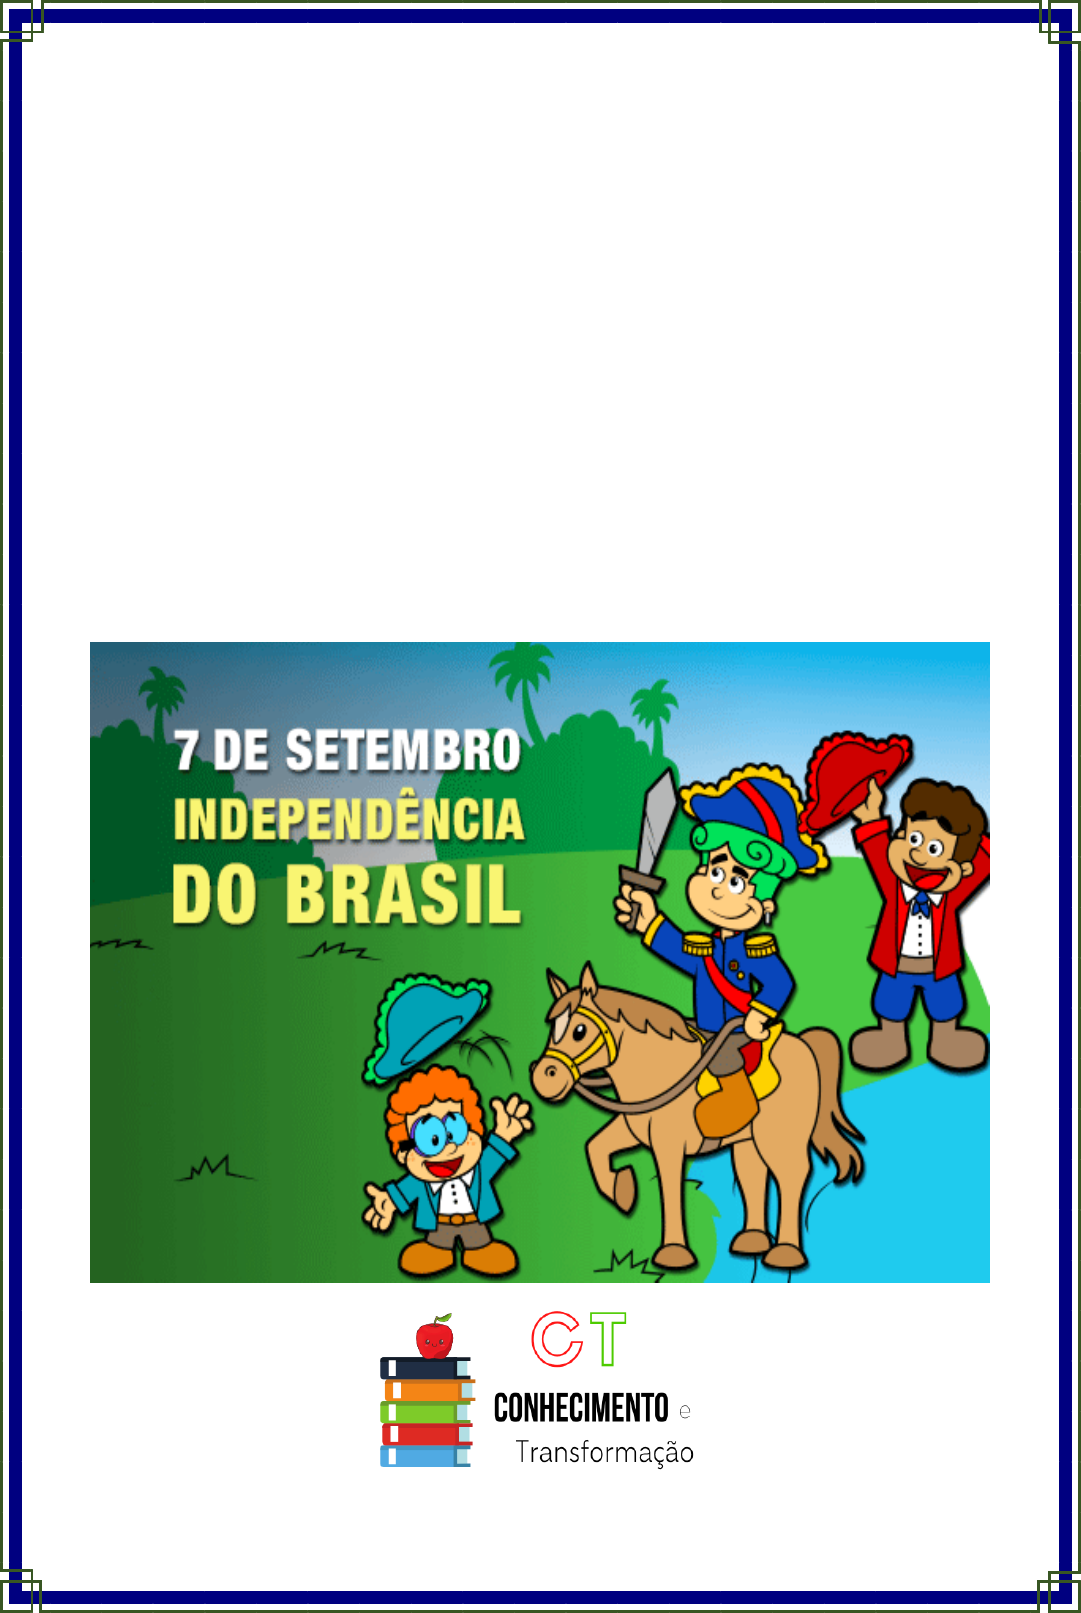 Jogo dos 7 erros - Independência do Brasil - Pedagogia